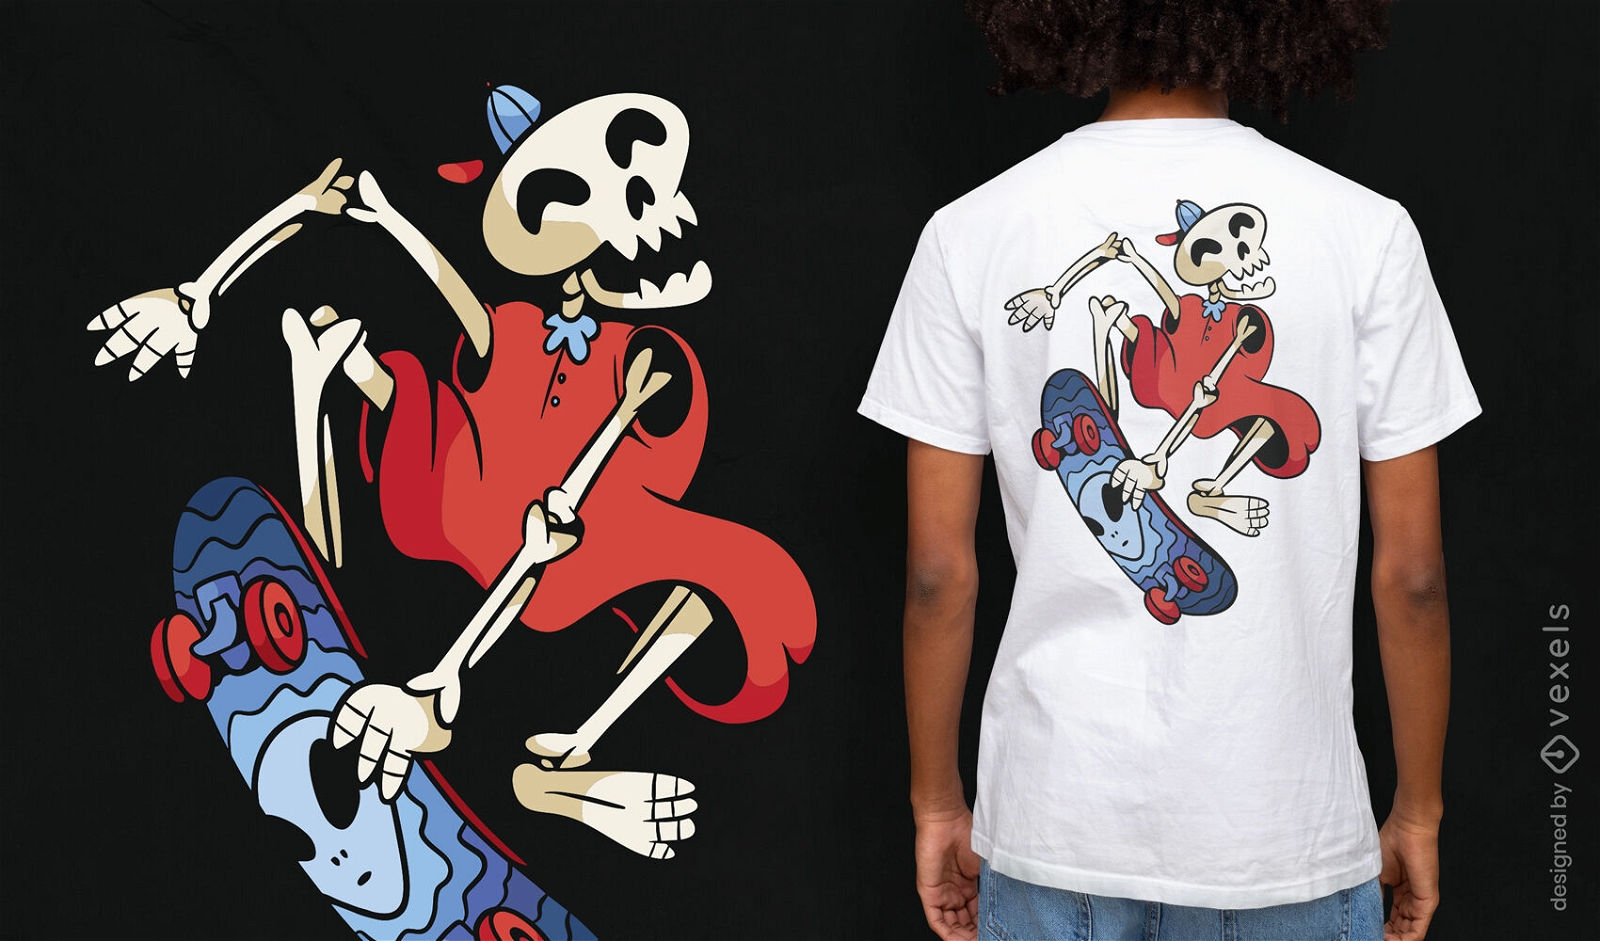 Skeleton skater cartoon t-shirt design